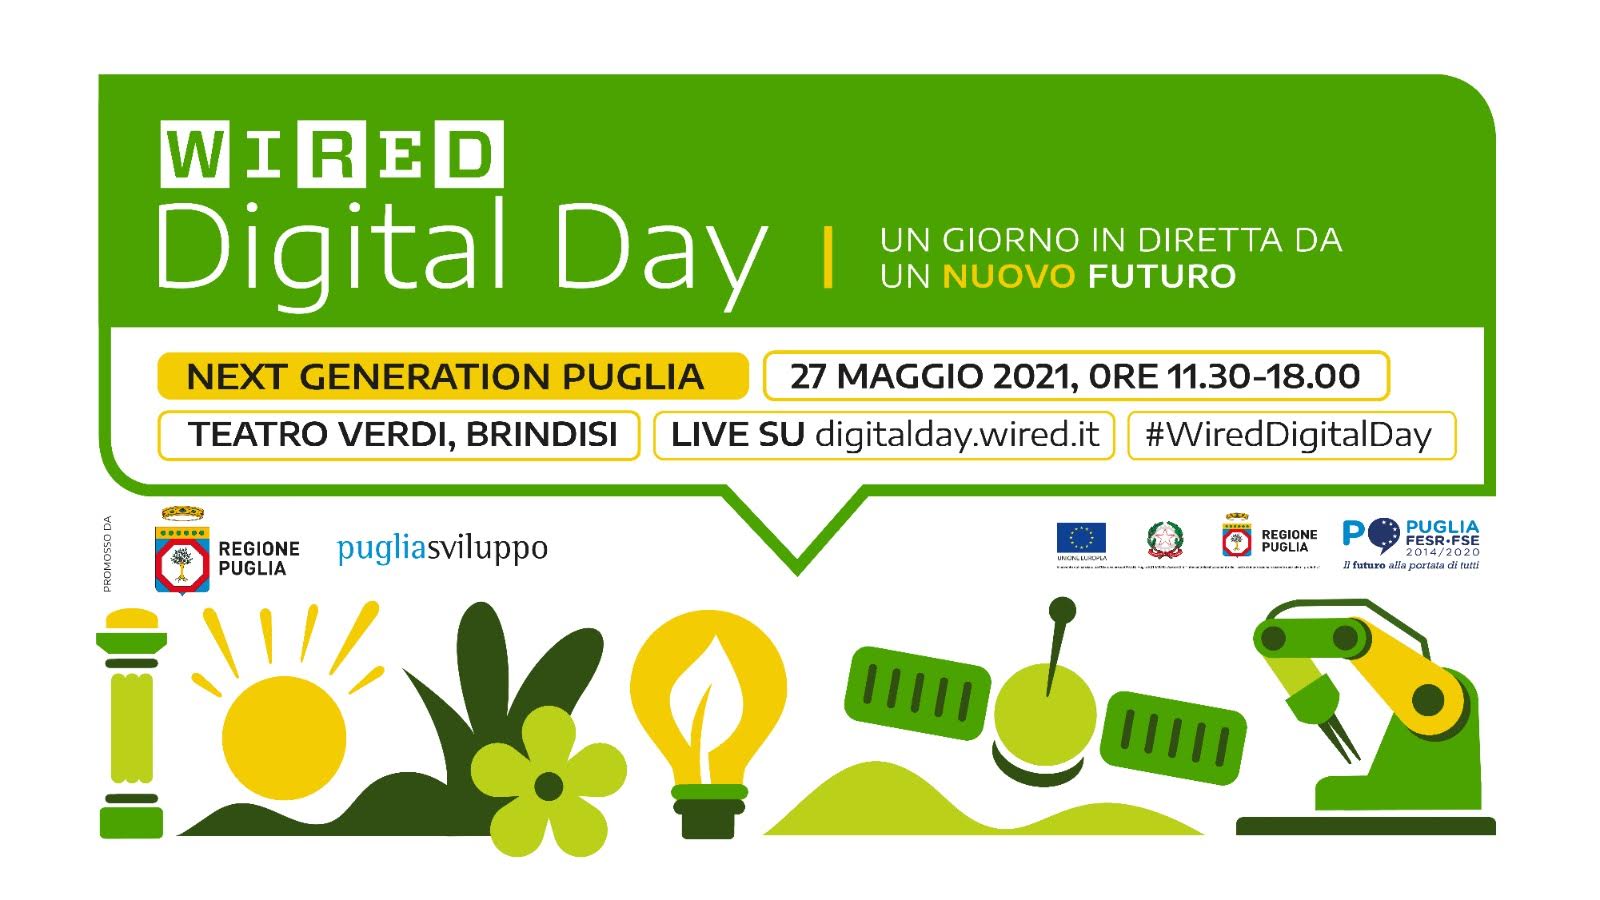 Domani 27 maggio si svolgerà a Brindisi la quarta edizione di WIRED DIGITAL DAY. Parteciperanno il presidente Emiliano e gli assessori Delli Noci e Maraschio